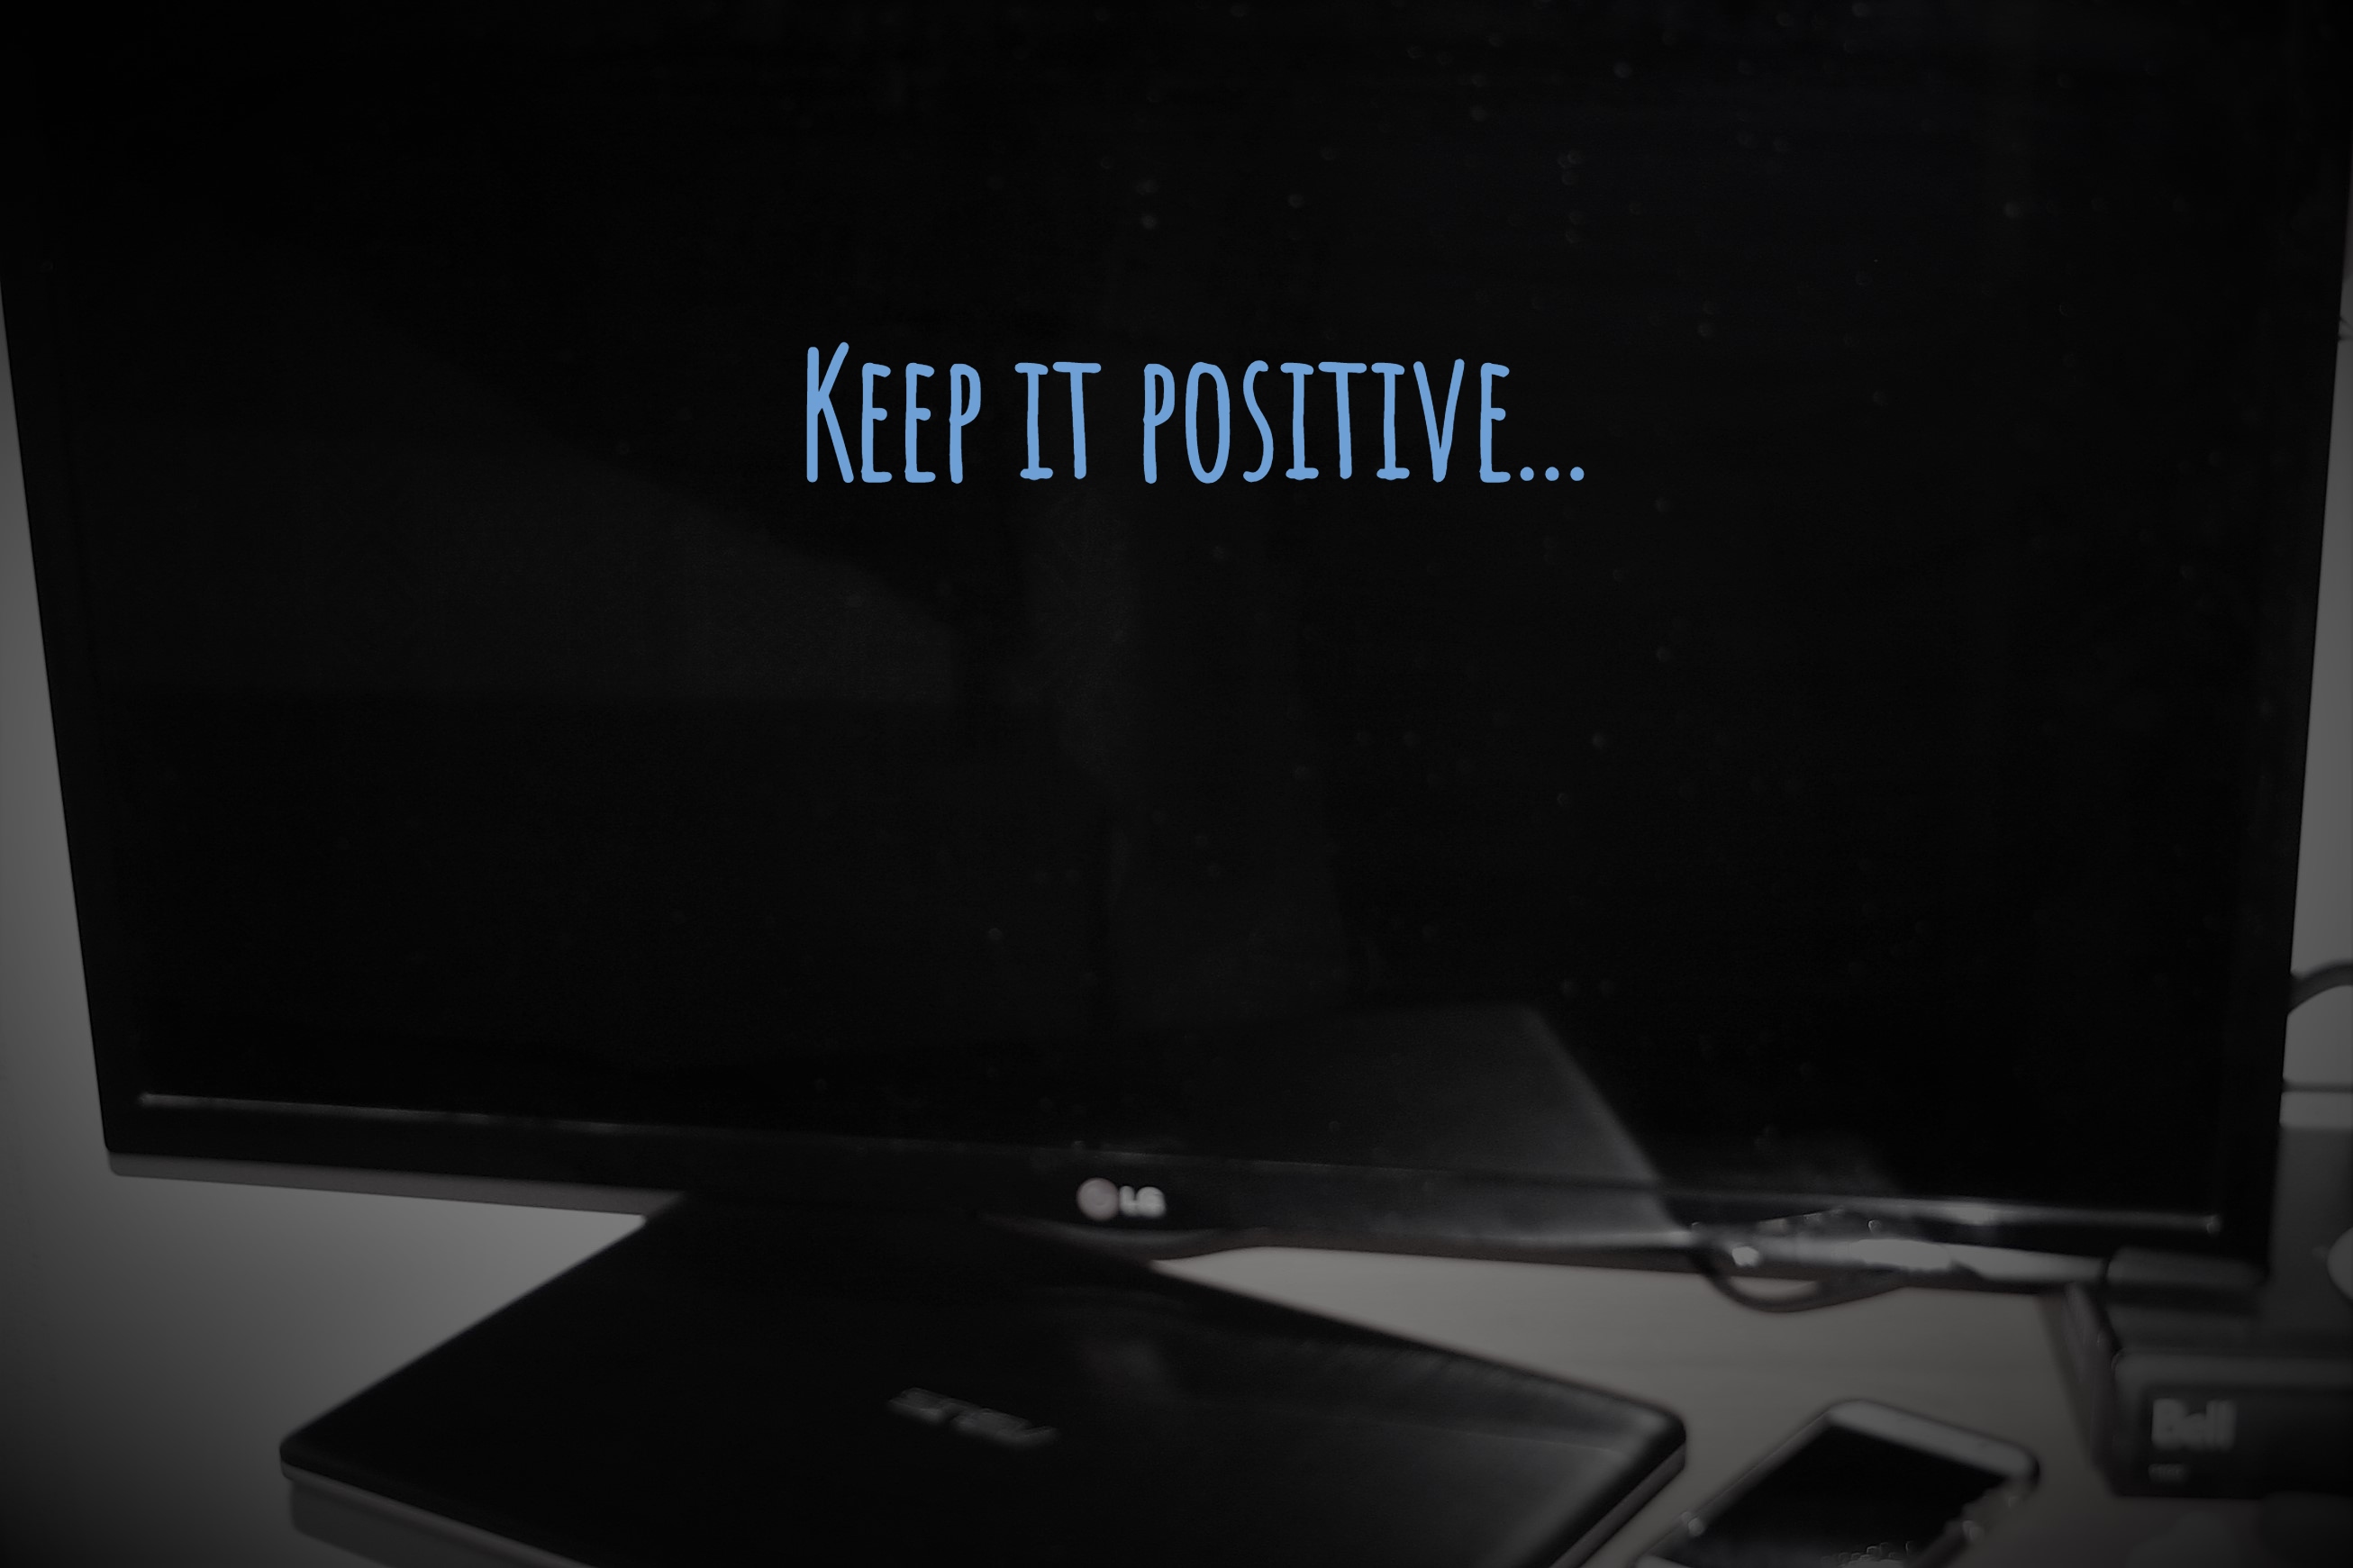 Keep it positive